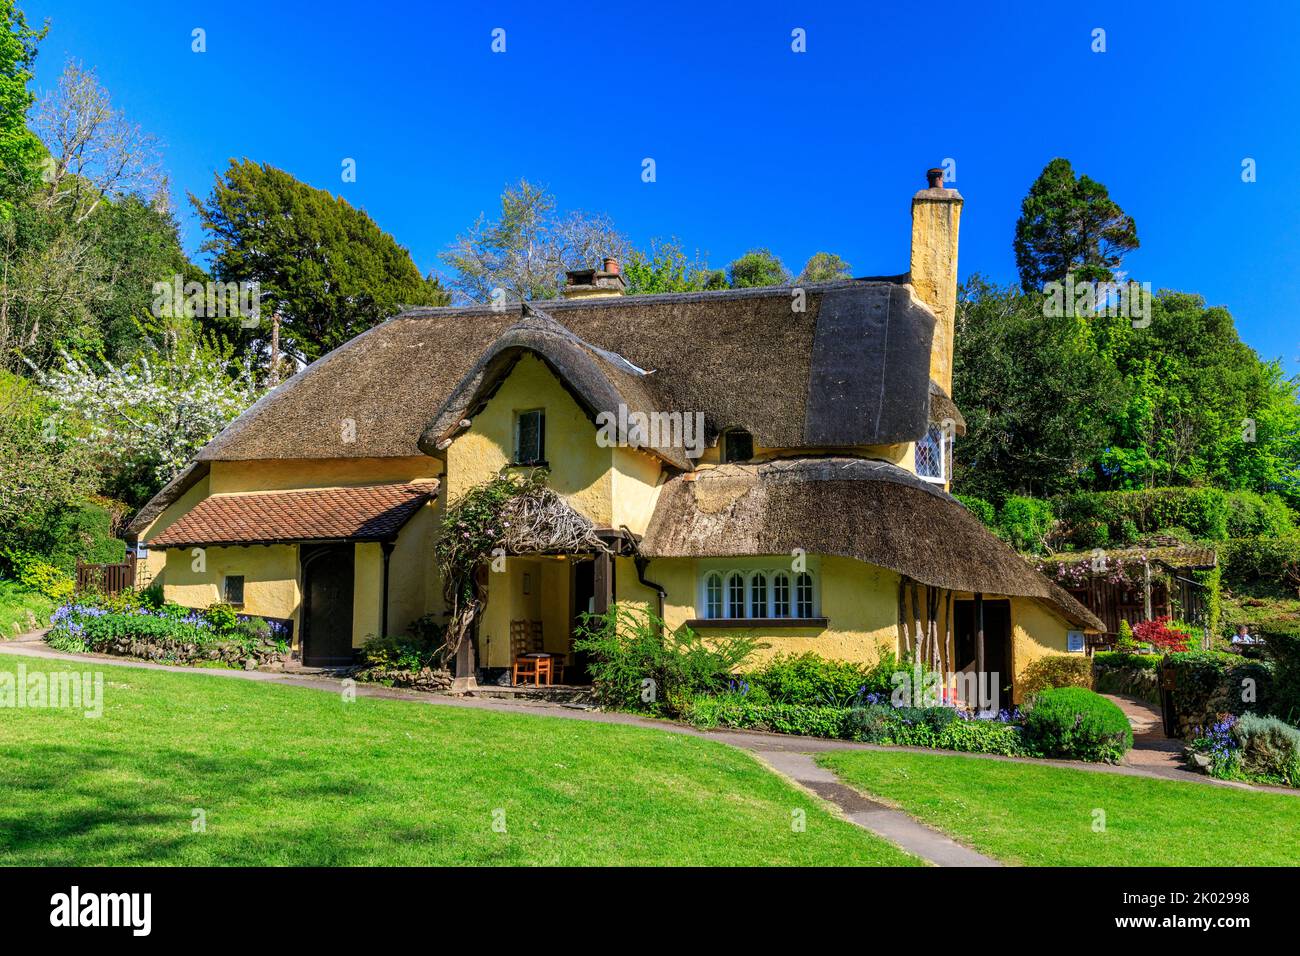 Périwinkle Cottage est un charmant cottage en chaume à Selworthy Green sur le domaine Holnicote, Somerset, Angleterre, Royaume-Uni Banque D'Images